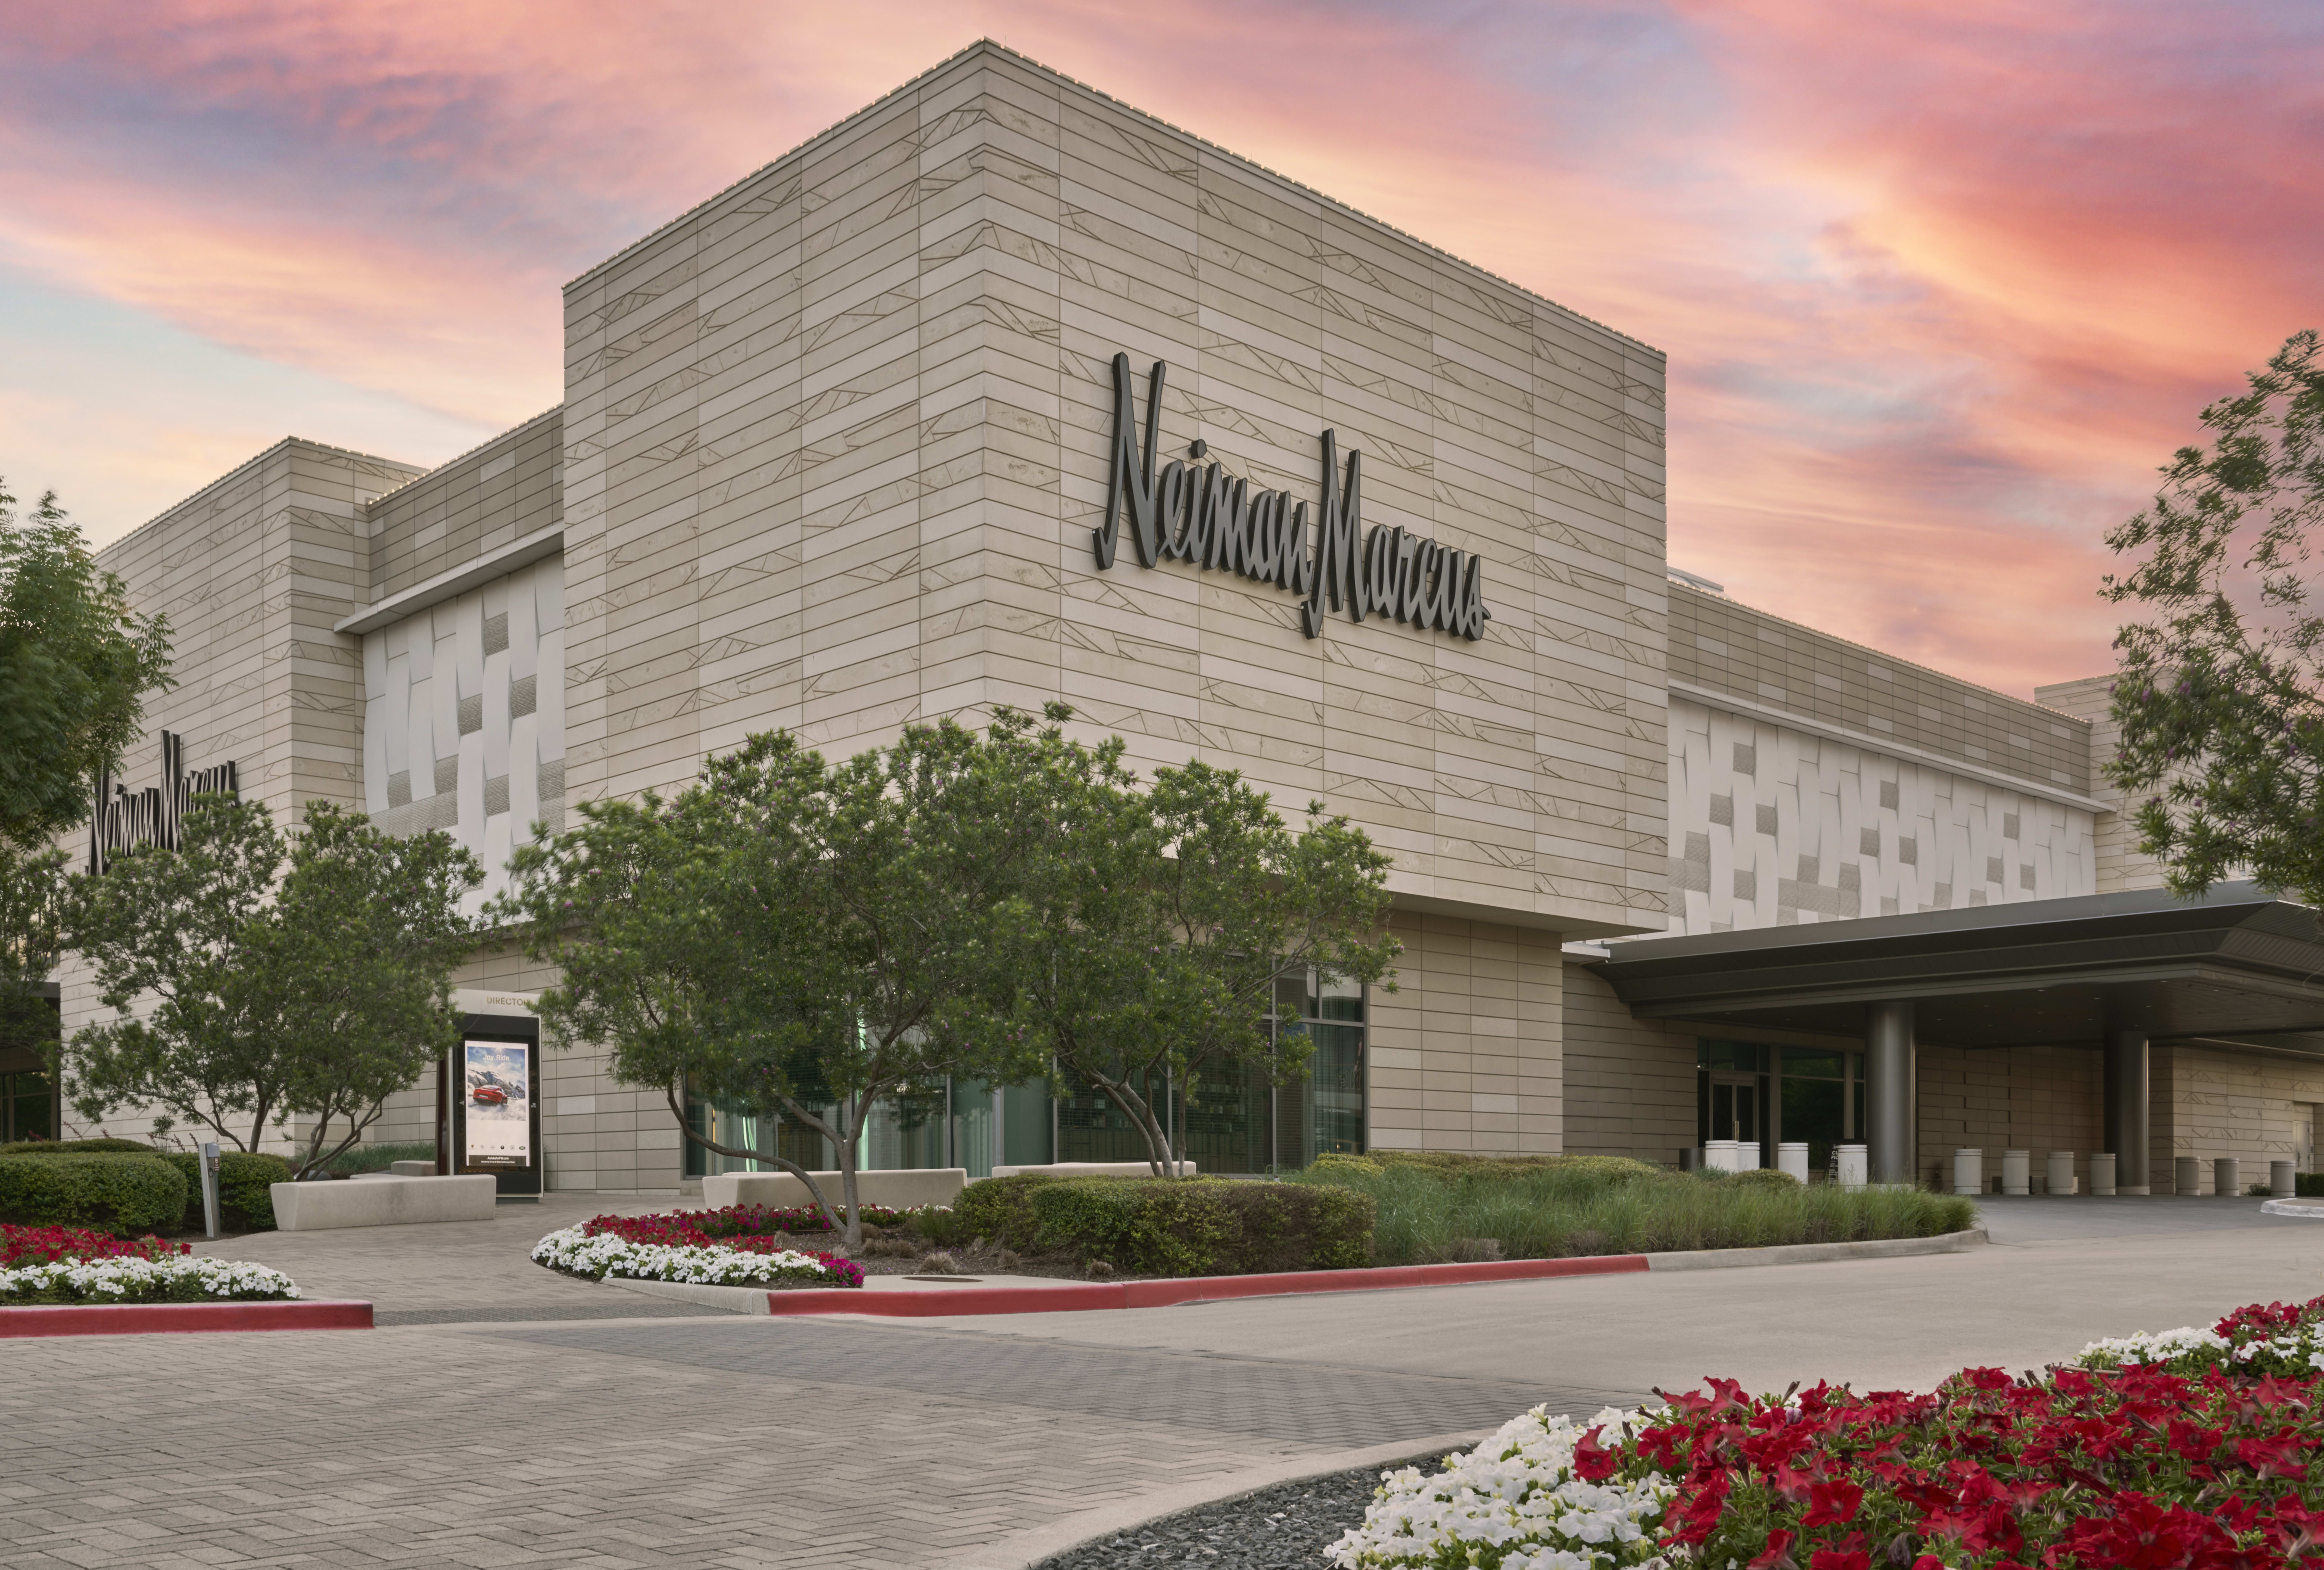 Louis Vuitton Dallas Neiman Marcus Northpark, 400 Northpark Center